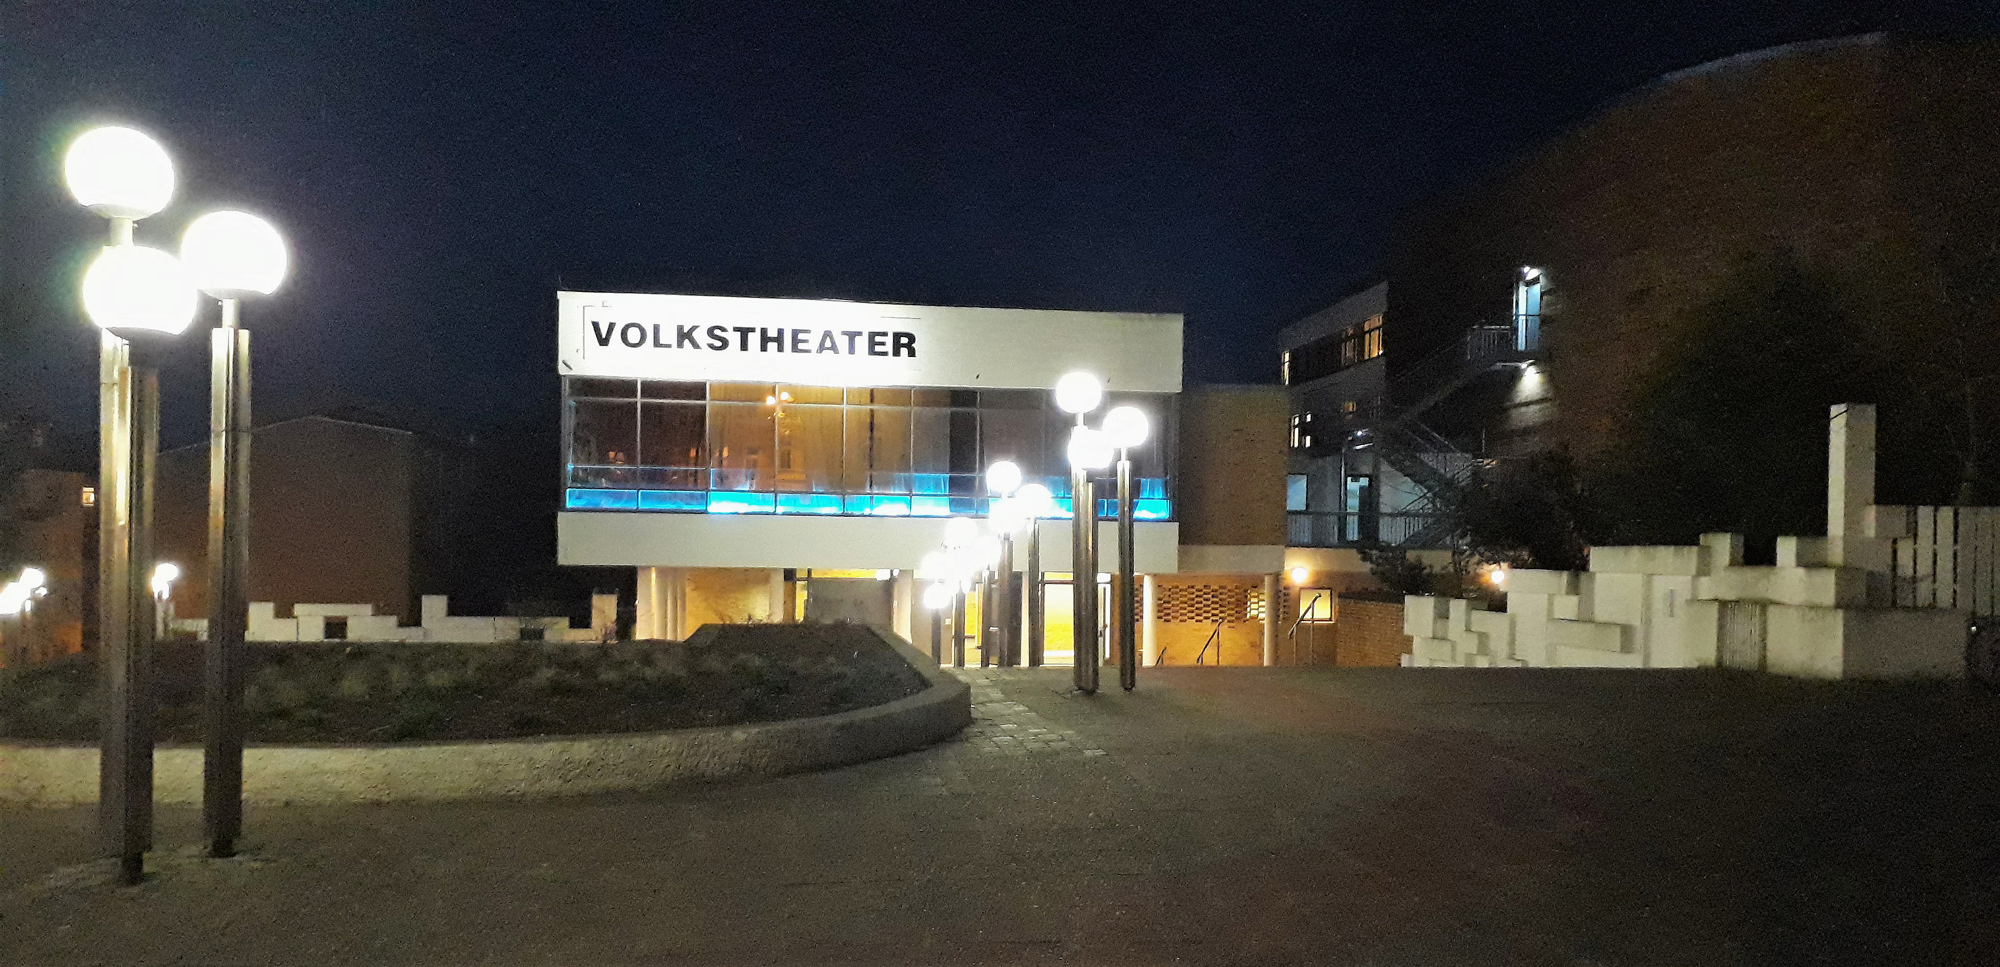 Volkstheater Rostock: Jenseits der blauen Grenze